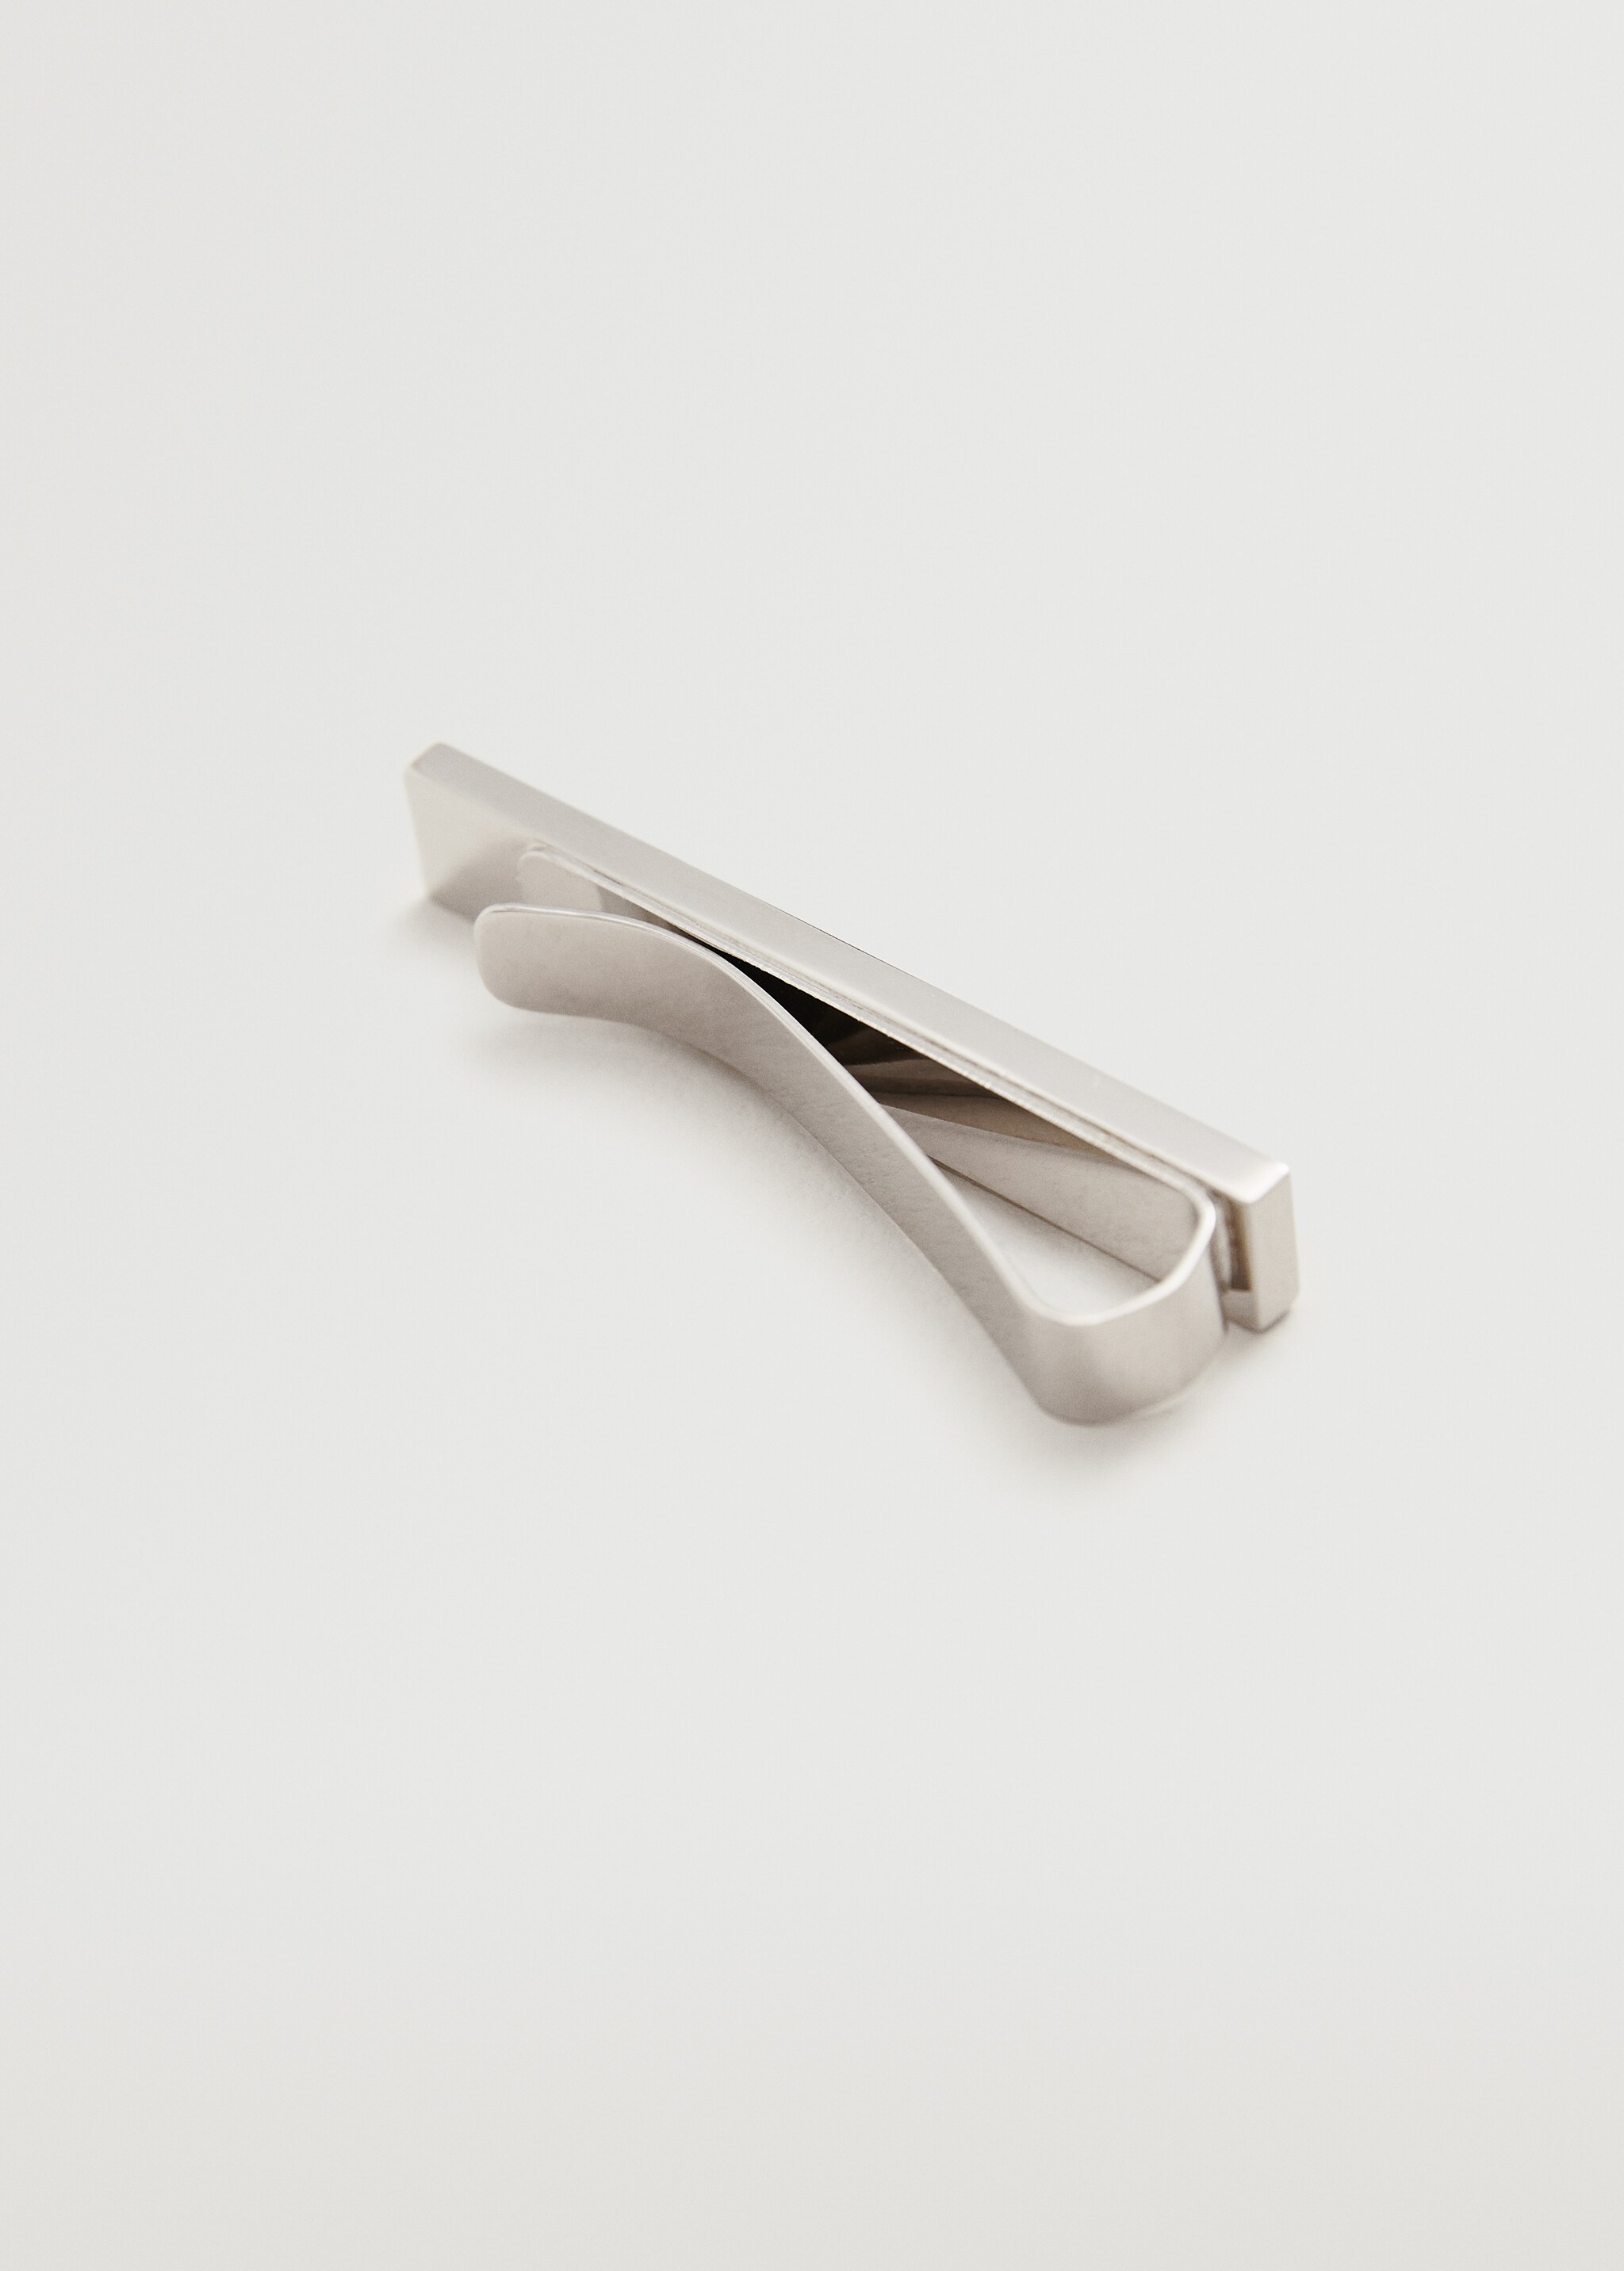 Mother-of-pearl metal brooch - Medium plane